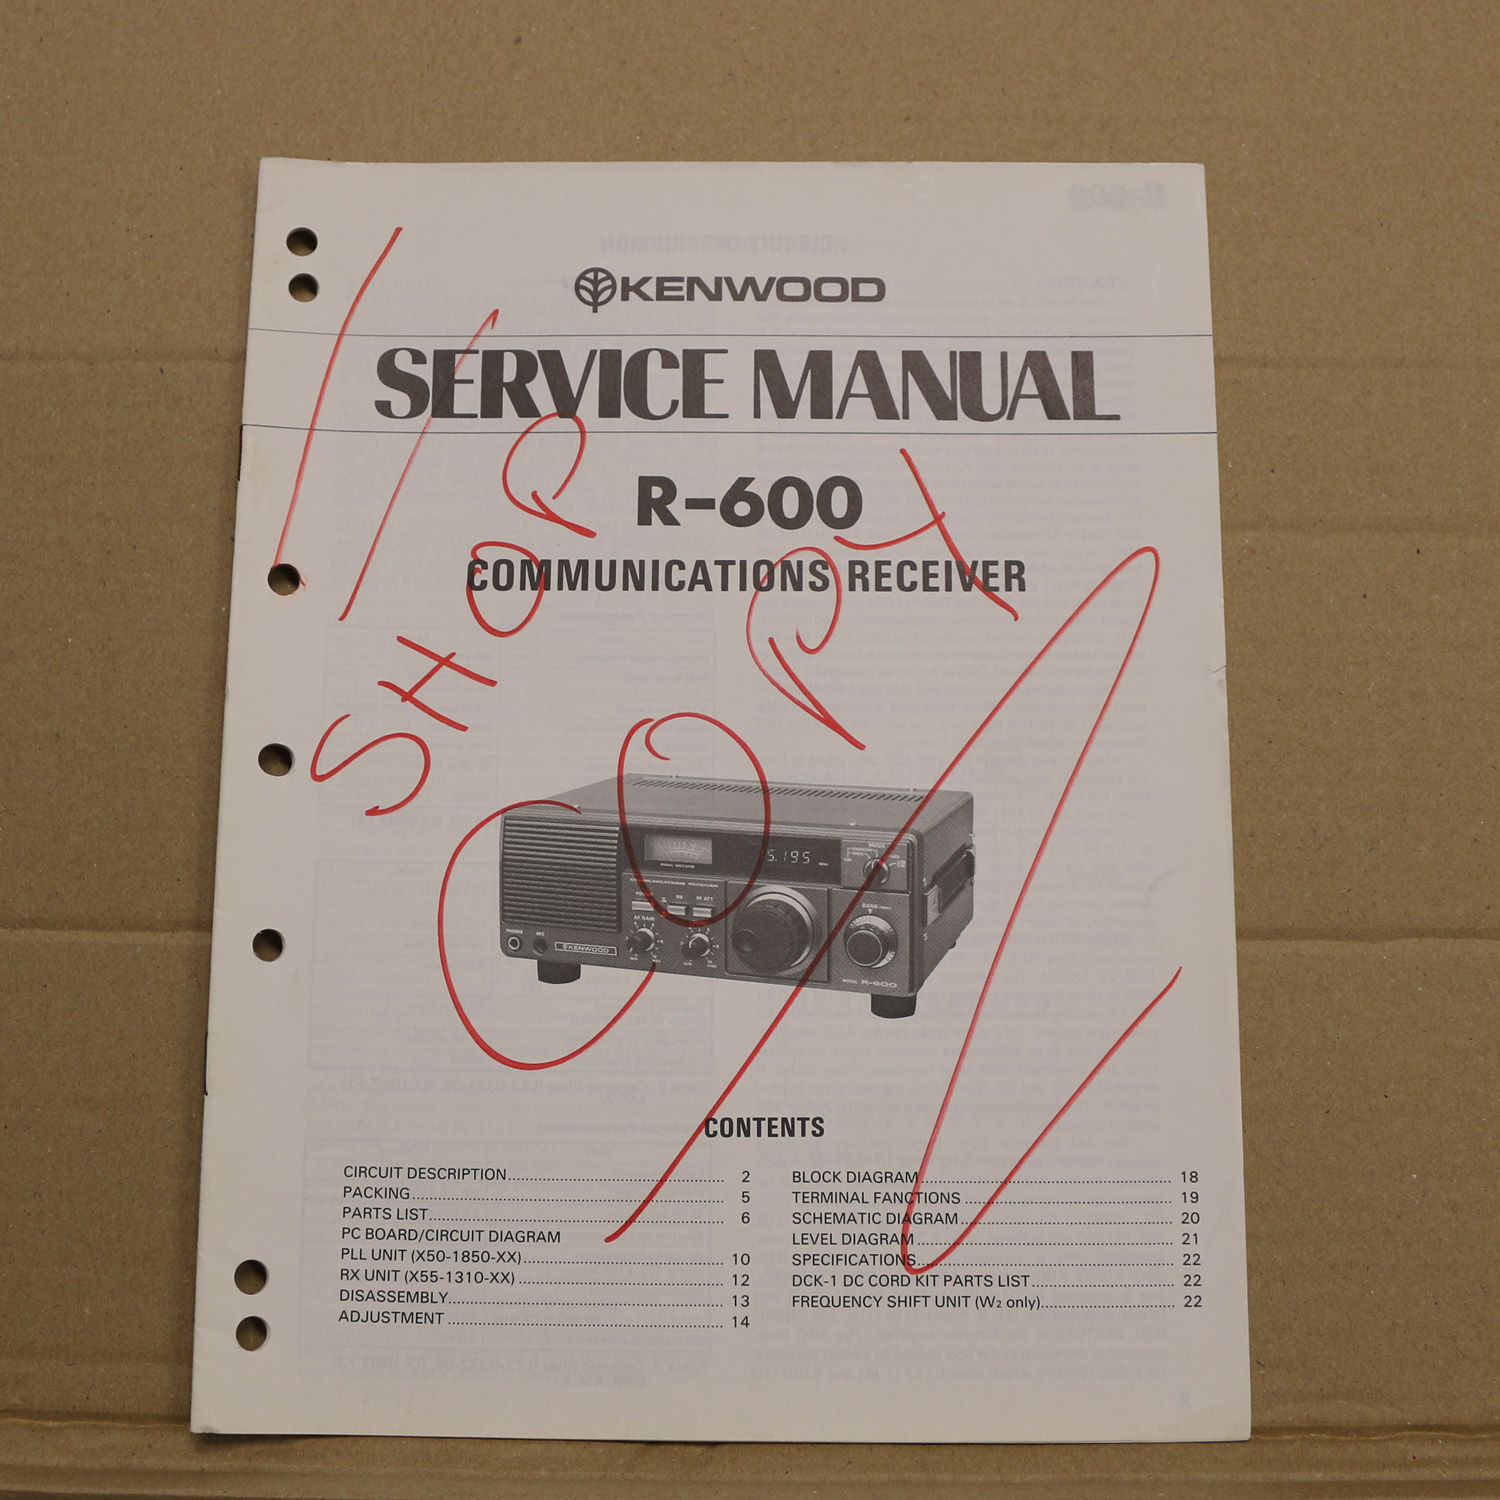 Kenwood R-600 Service Manual